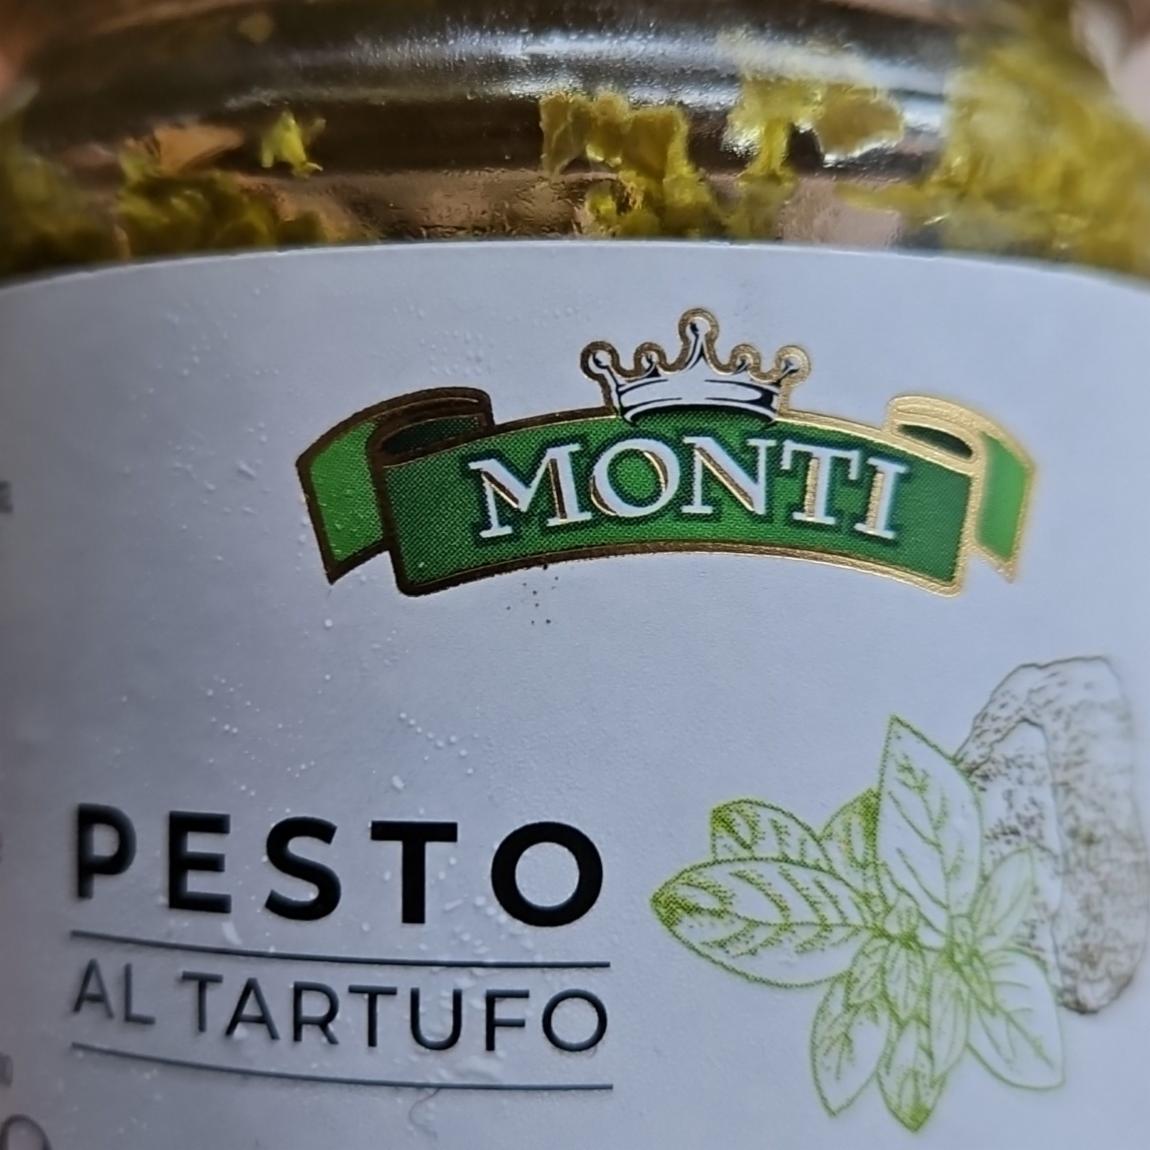 Fotografie - Pesto al tartufo Monti